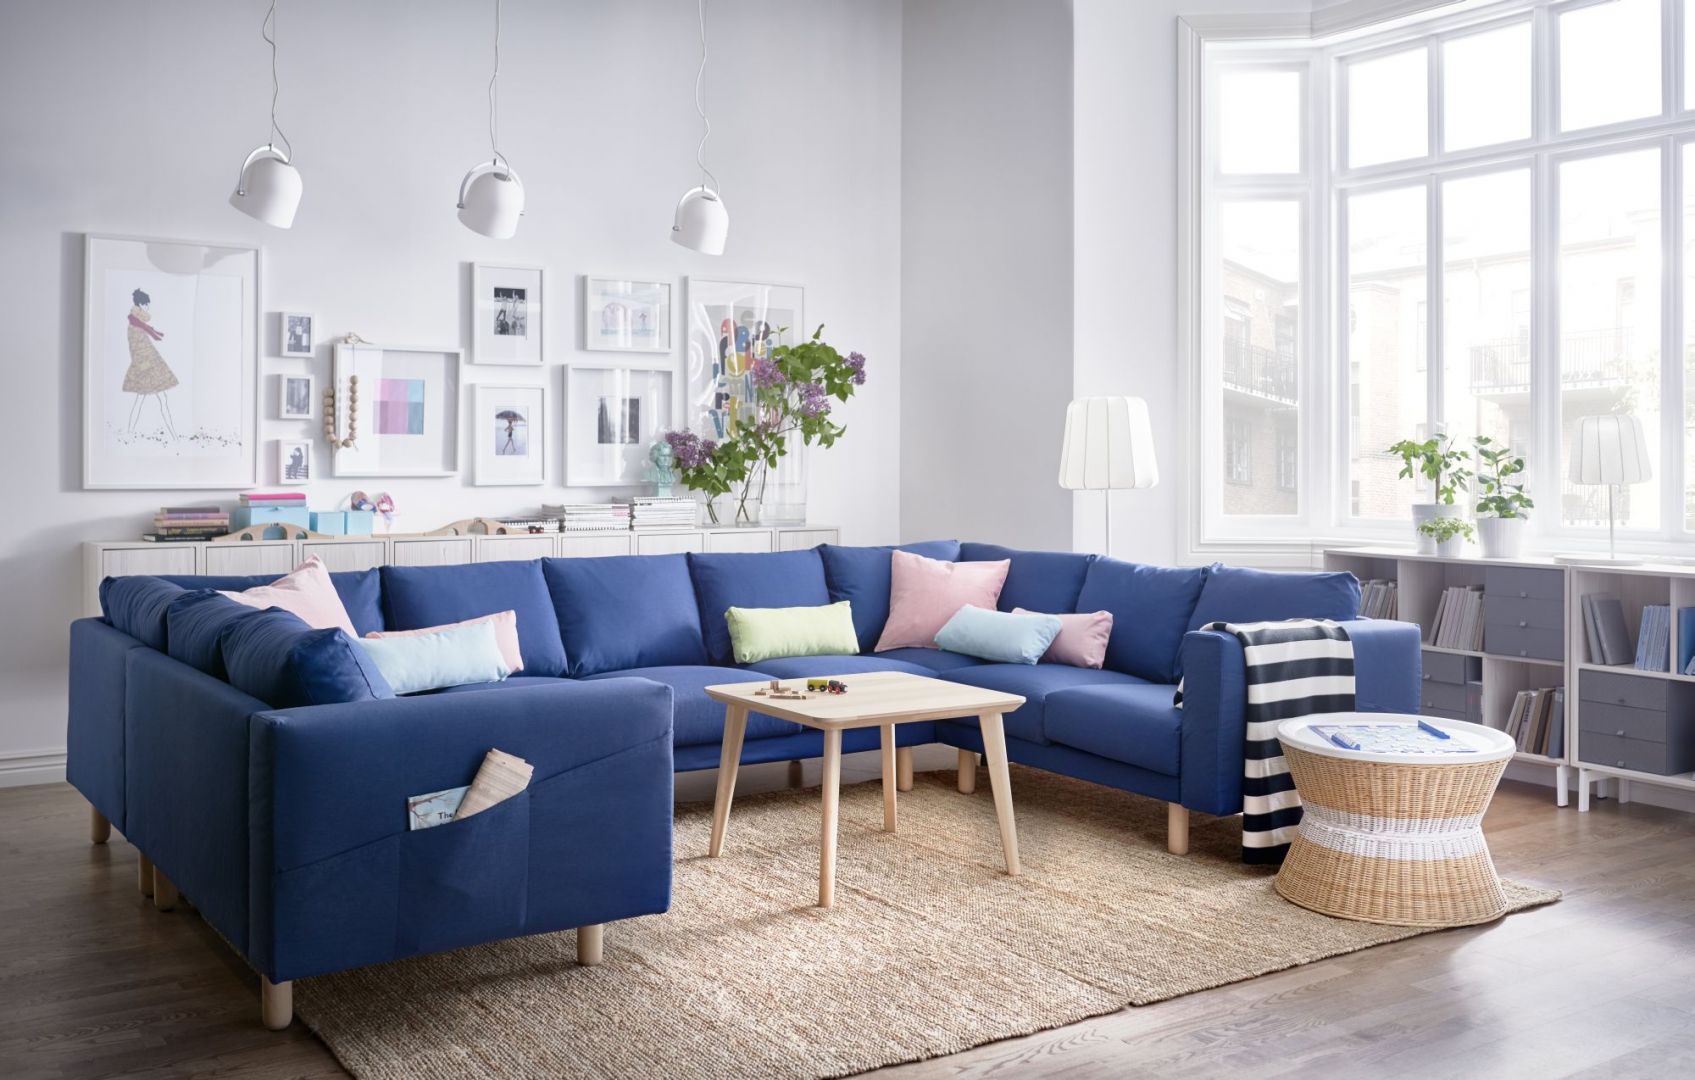 Sofa Norsborg dostępna jest w wielu kształtach, stylach i wymiarach. Nóżki wykonane z litego nadają jej ciekawy wygląd. Fot. IKEA 